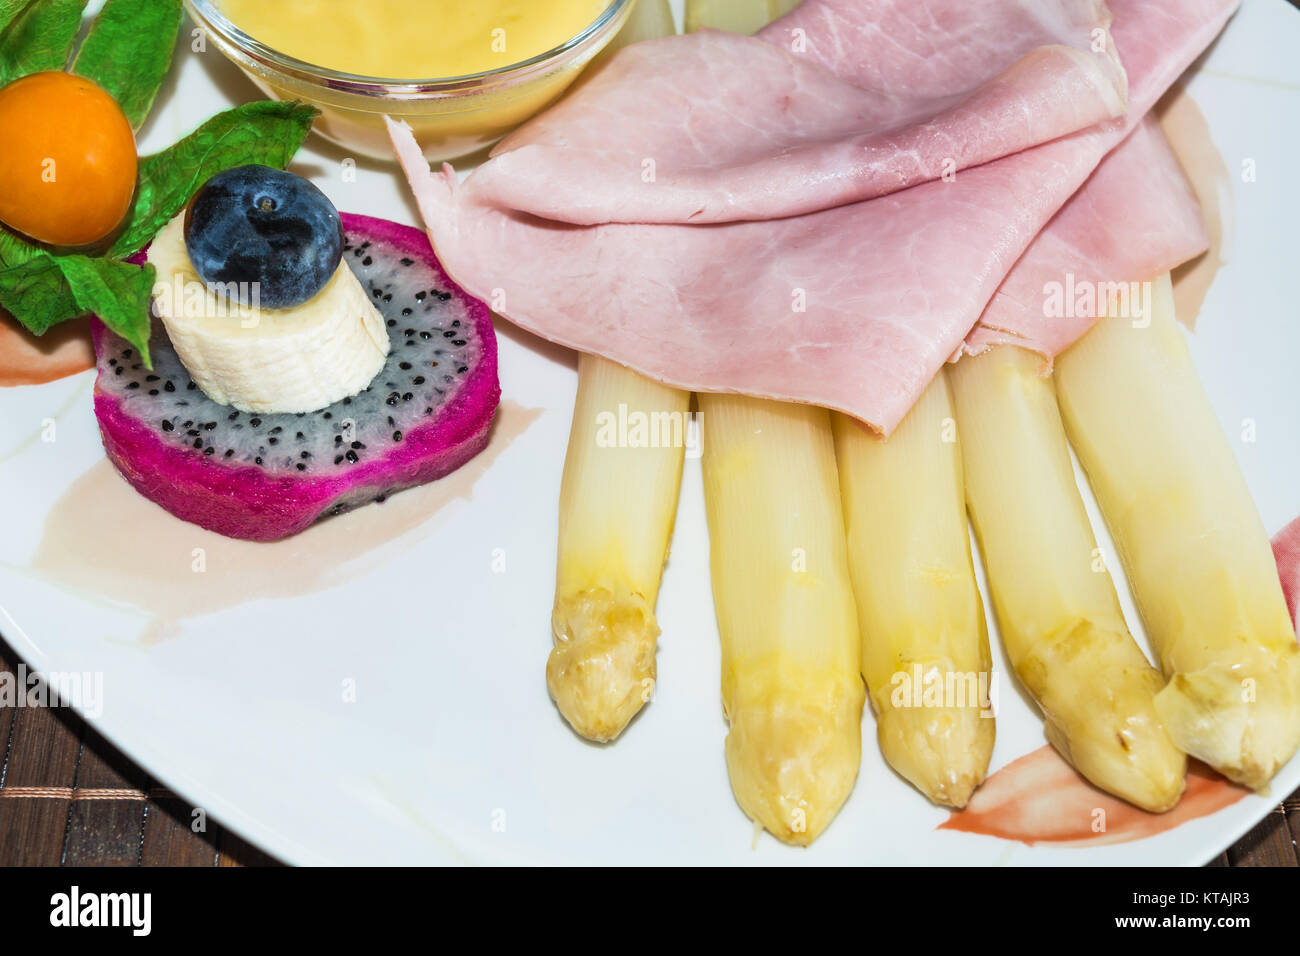 Einfaches Spargelgericht mit gekochten Schinken und Sosse garniert auf einem weissen Teller. Stock Photo